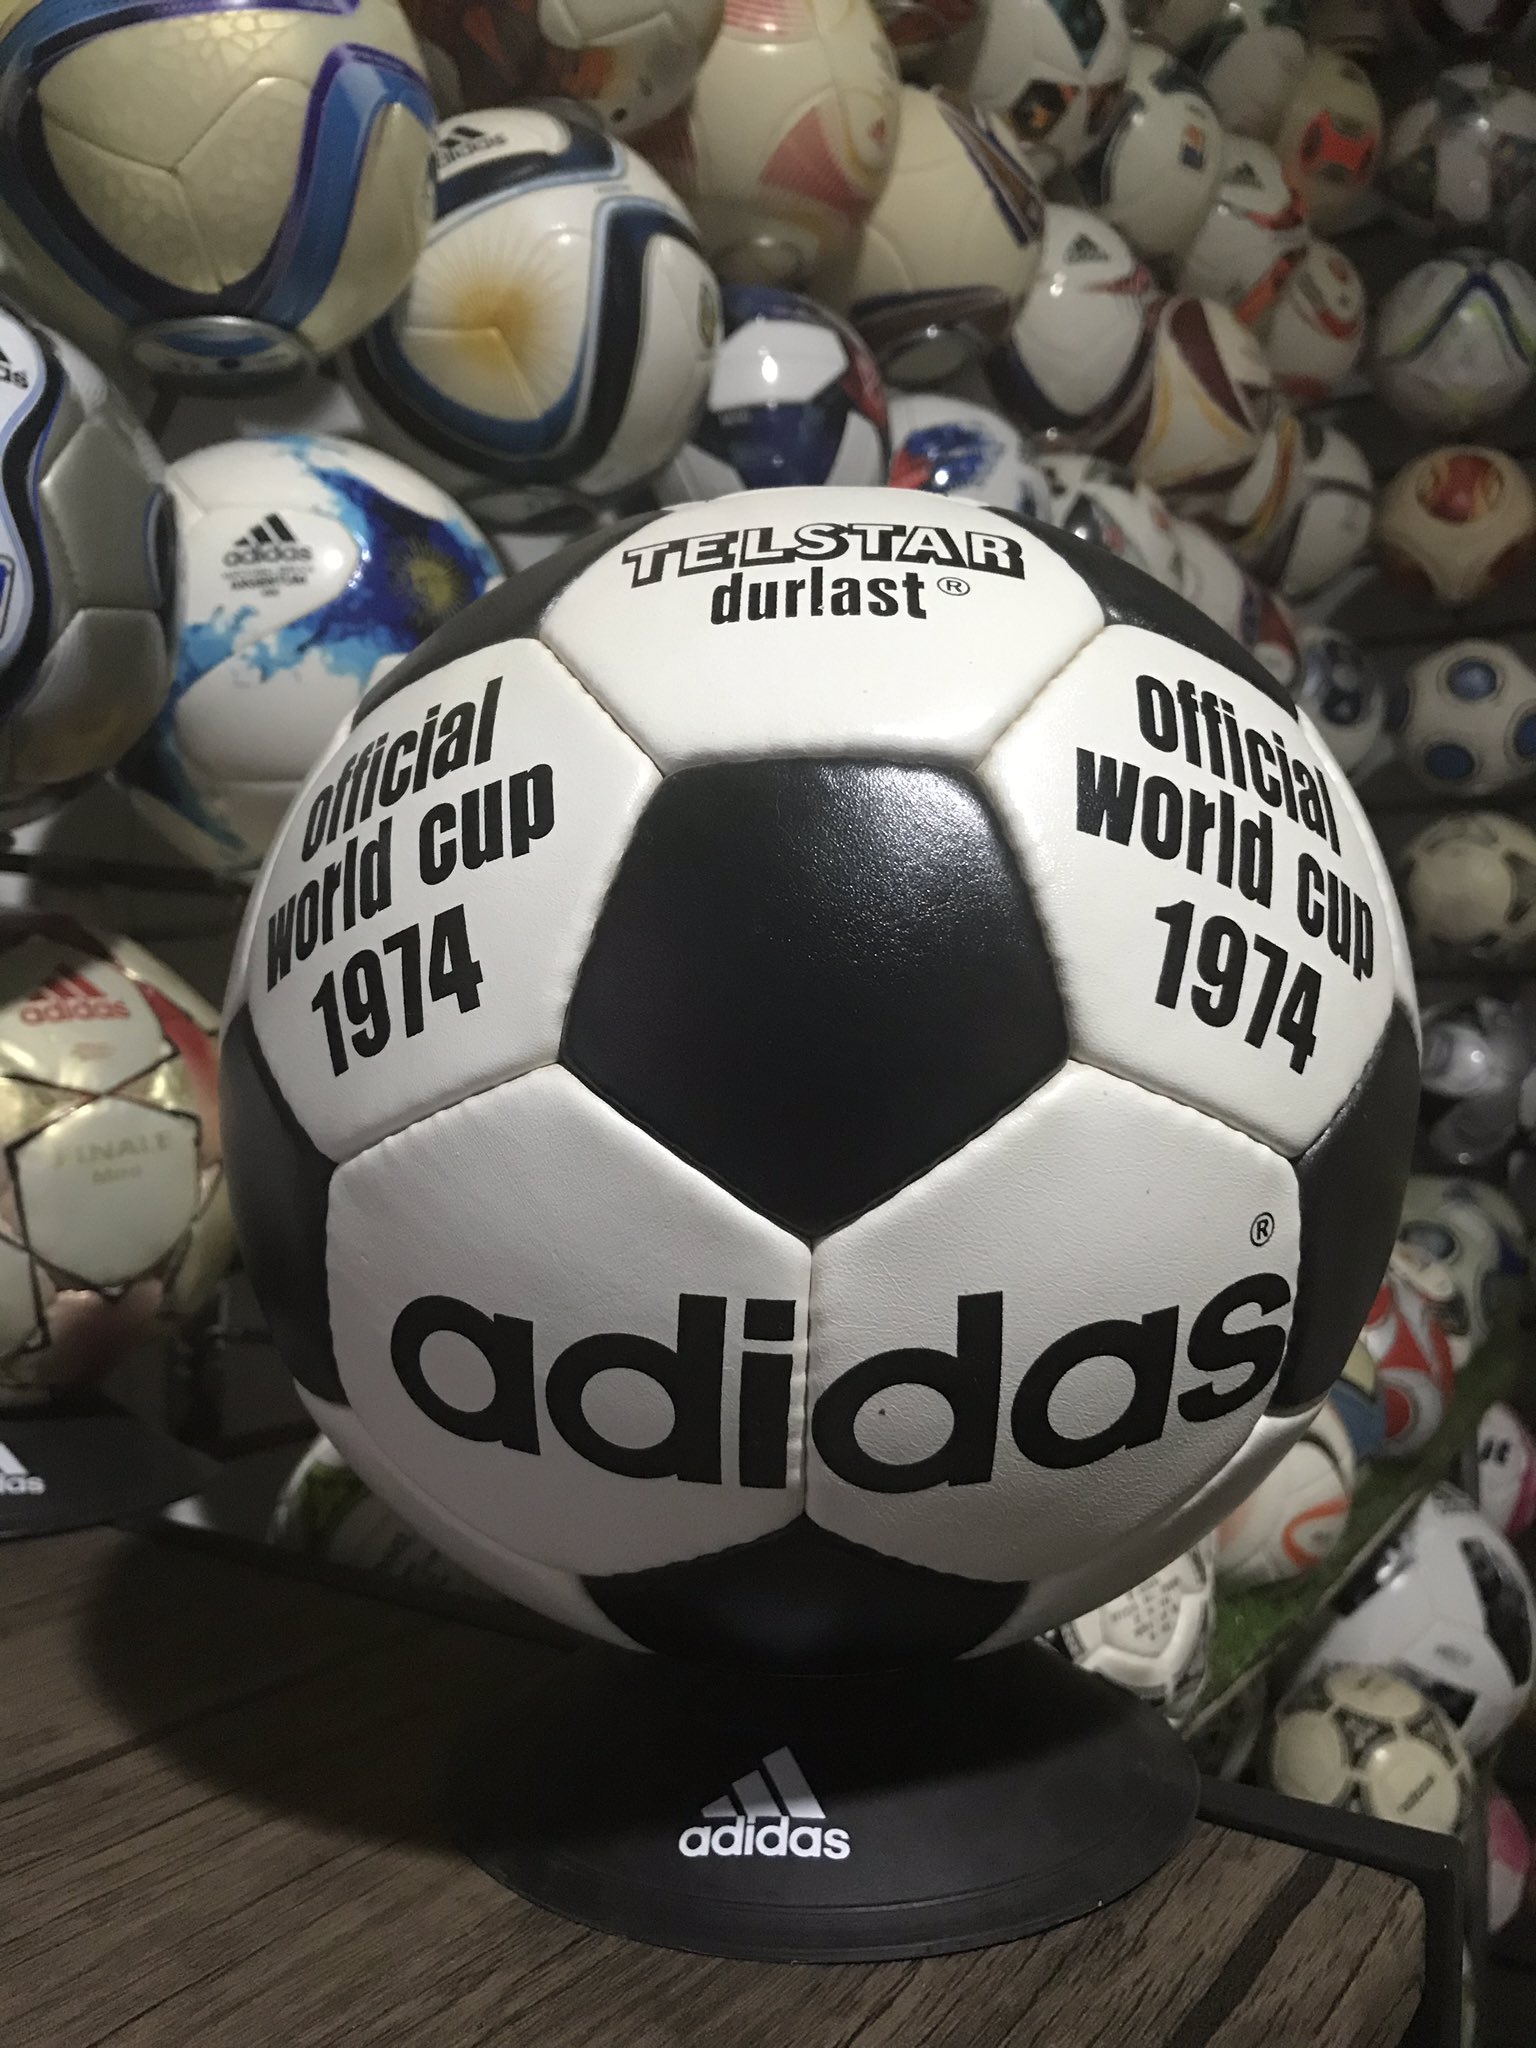 Pablo046 on Twitter: "un poco conocido fue lo llamativo del balon que se uso, en la historia de los mundiales solo figura el adidas telstar durlast, pero en tres partidos se